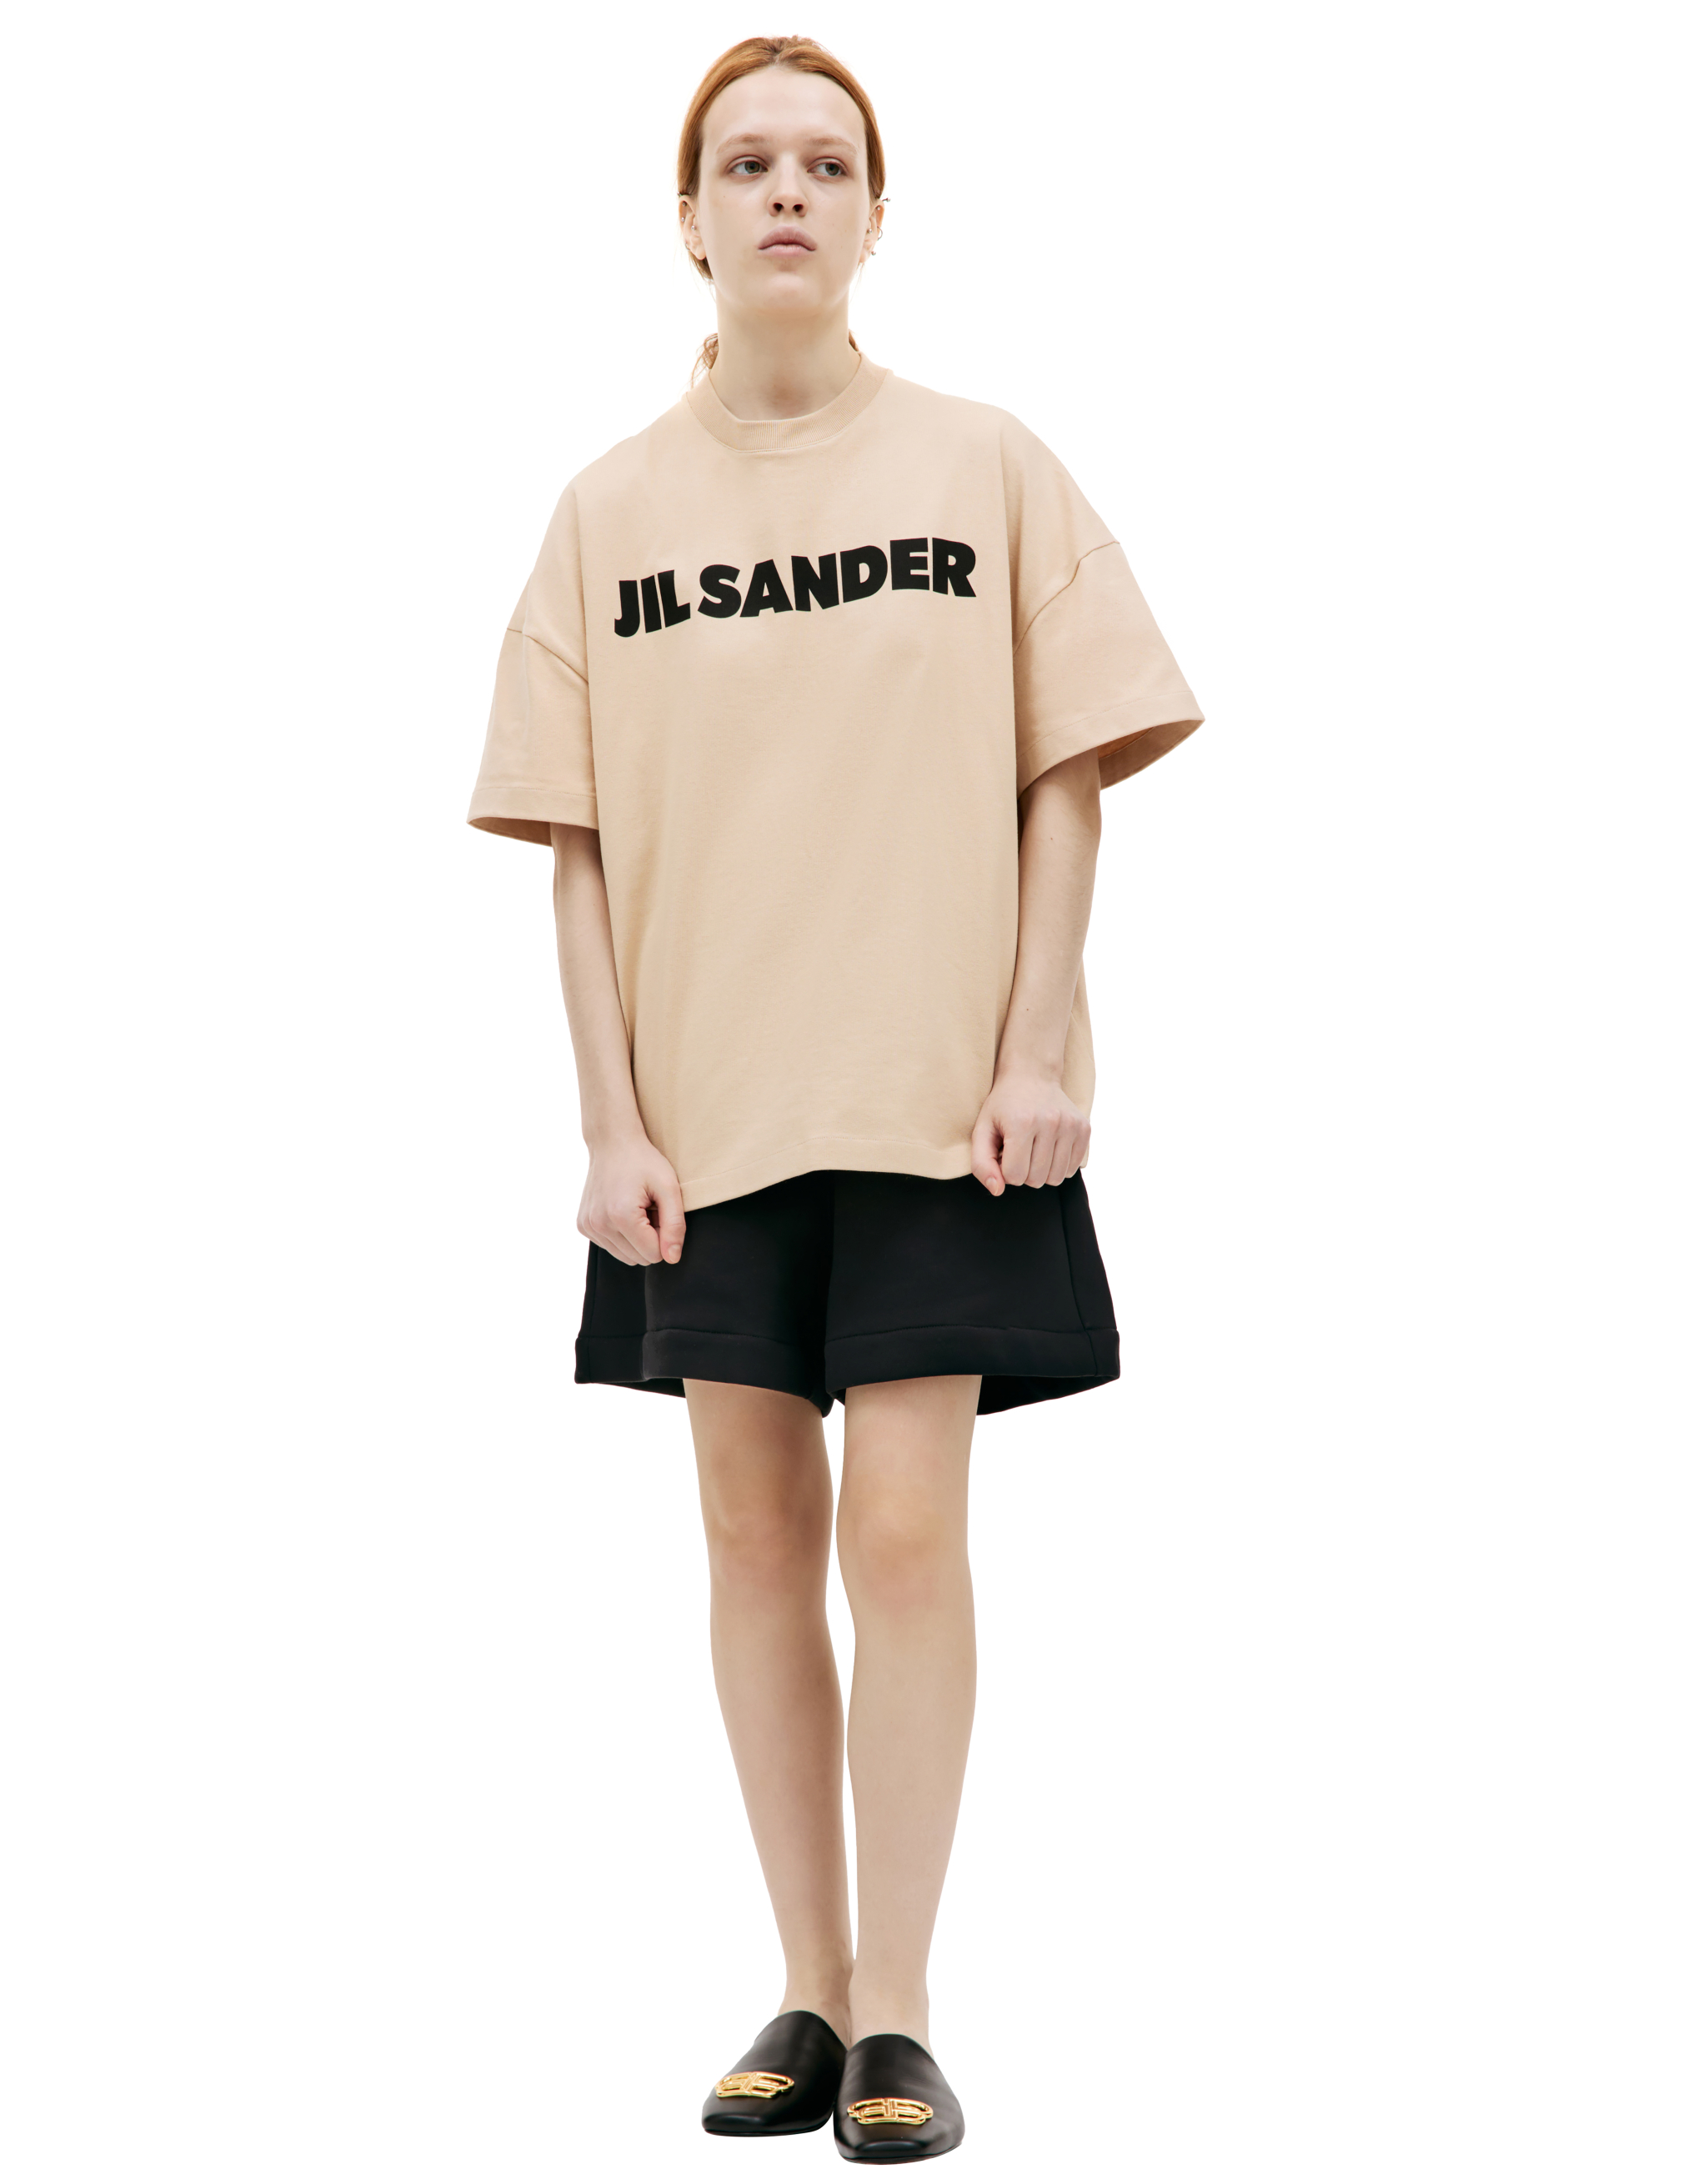 Хлопковая футболка с логотипом Jil Sander J21GC0001/J20215/236, размер S;M;L;XL